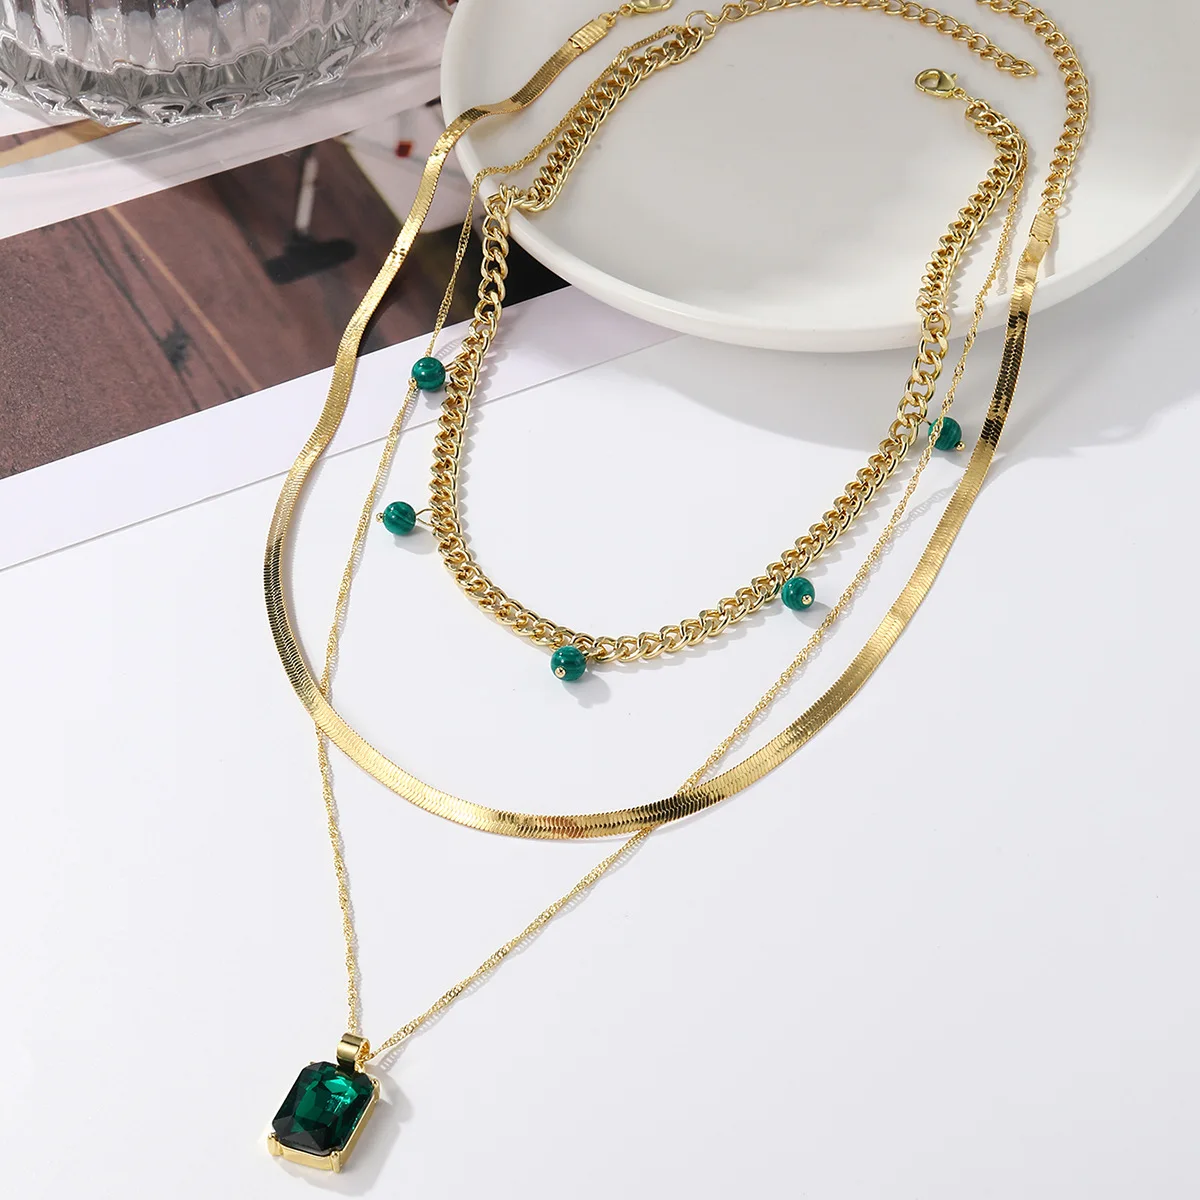 DQQ New Fashion Lady Star многослойное ожерелье с цепочками из металла для женщин, ювелирные изделия для вечеринок, набор ожерелий Pandant 5